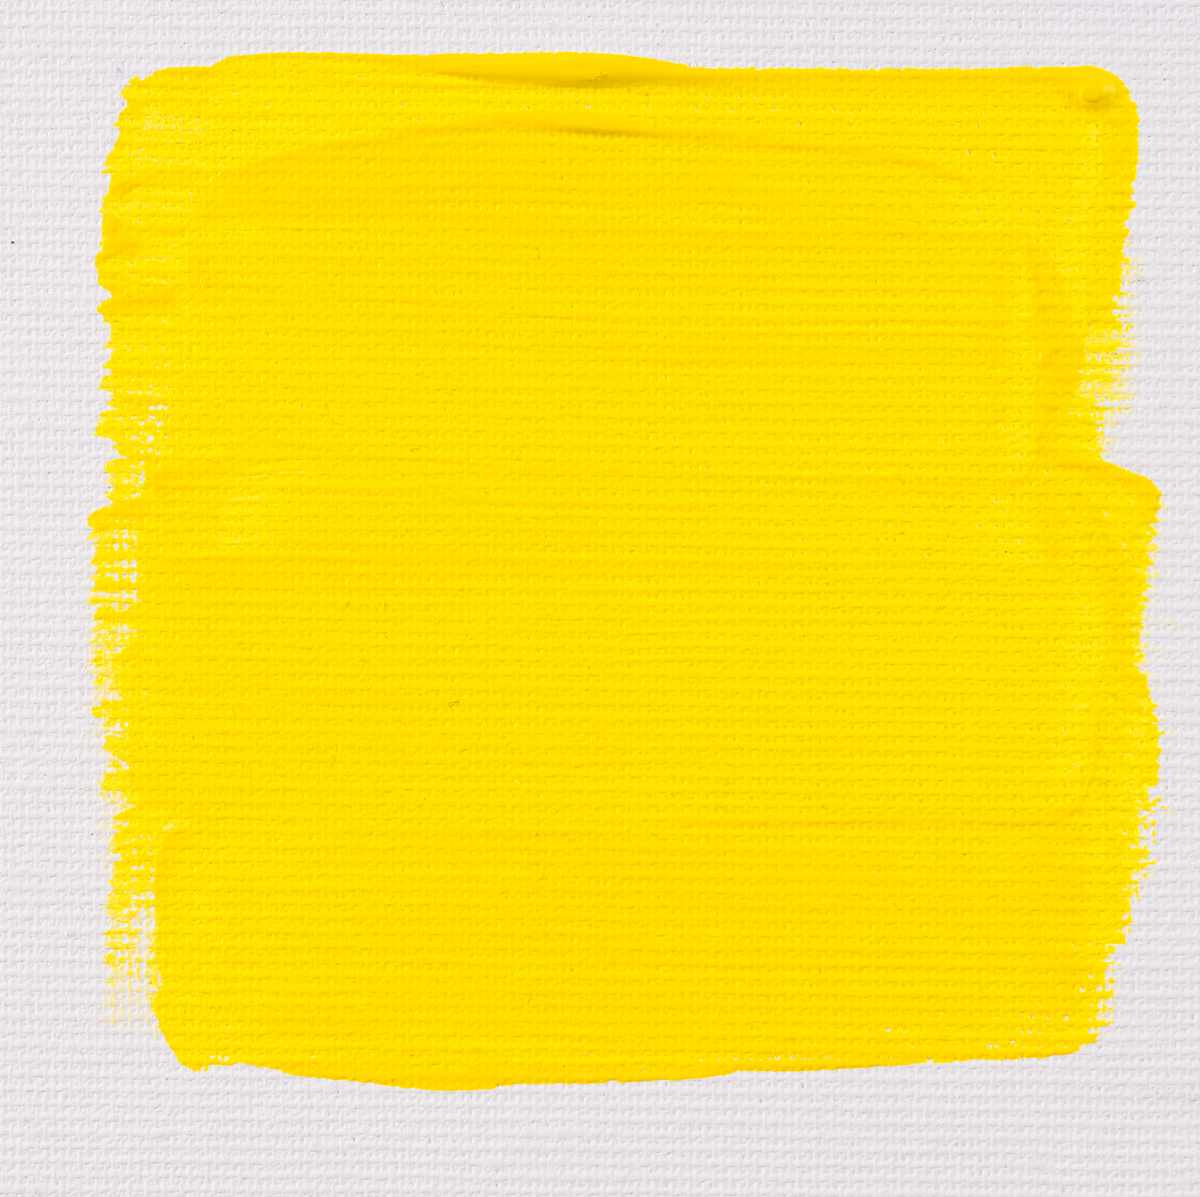 Primary yellow